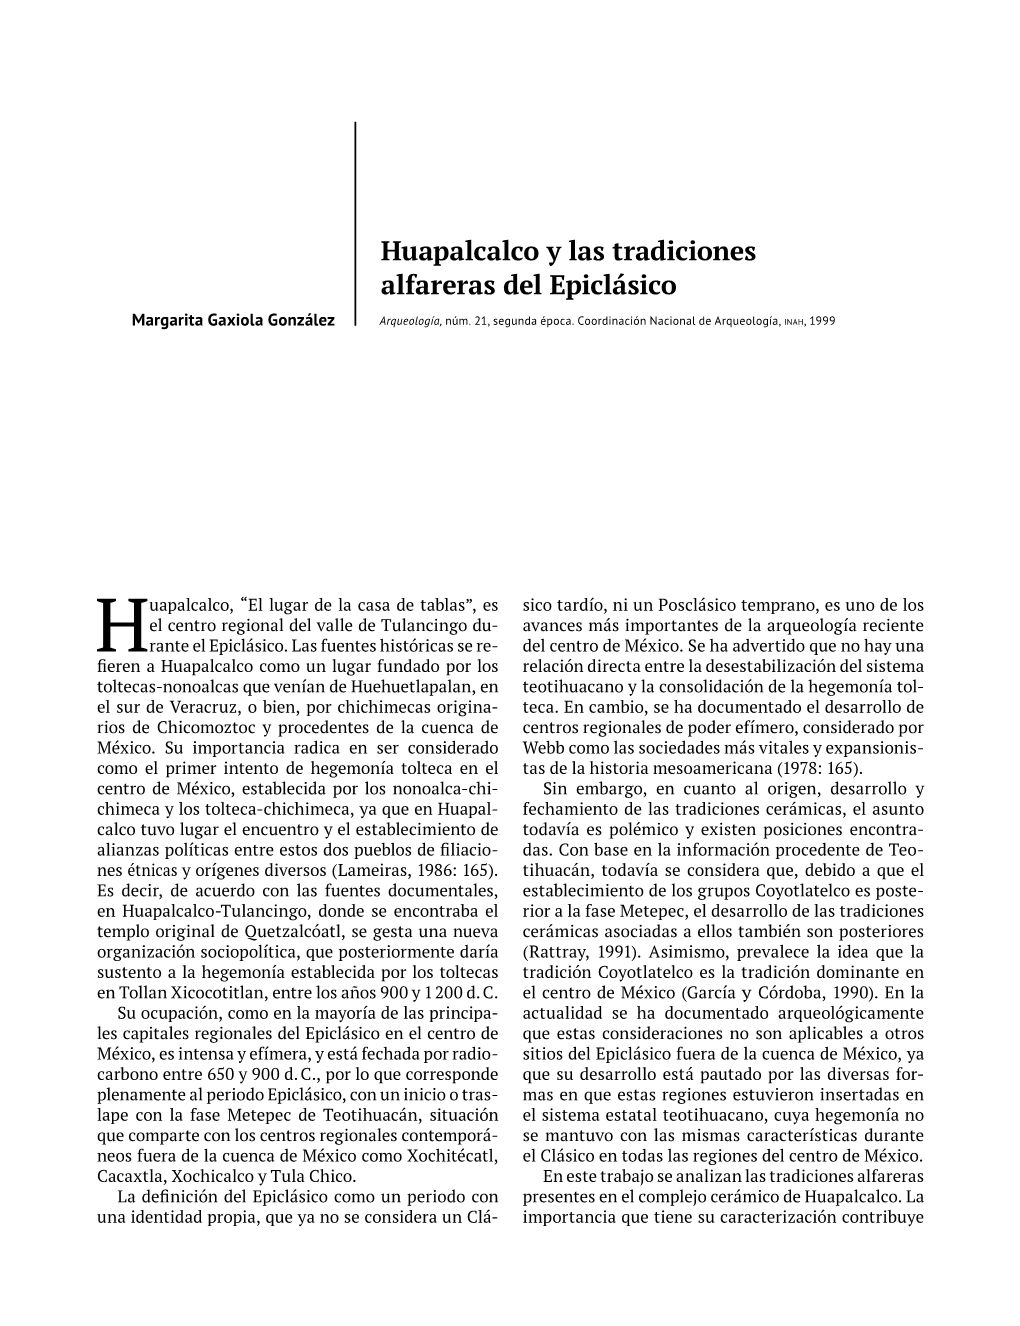 Huapalcalco Y Las Tradiciones Alfareras Del Epiclásico